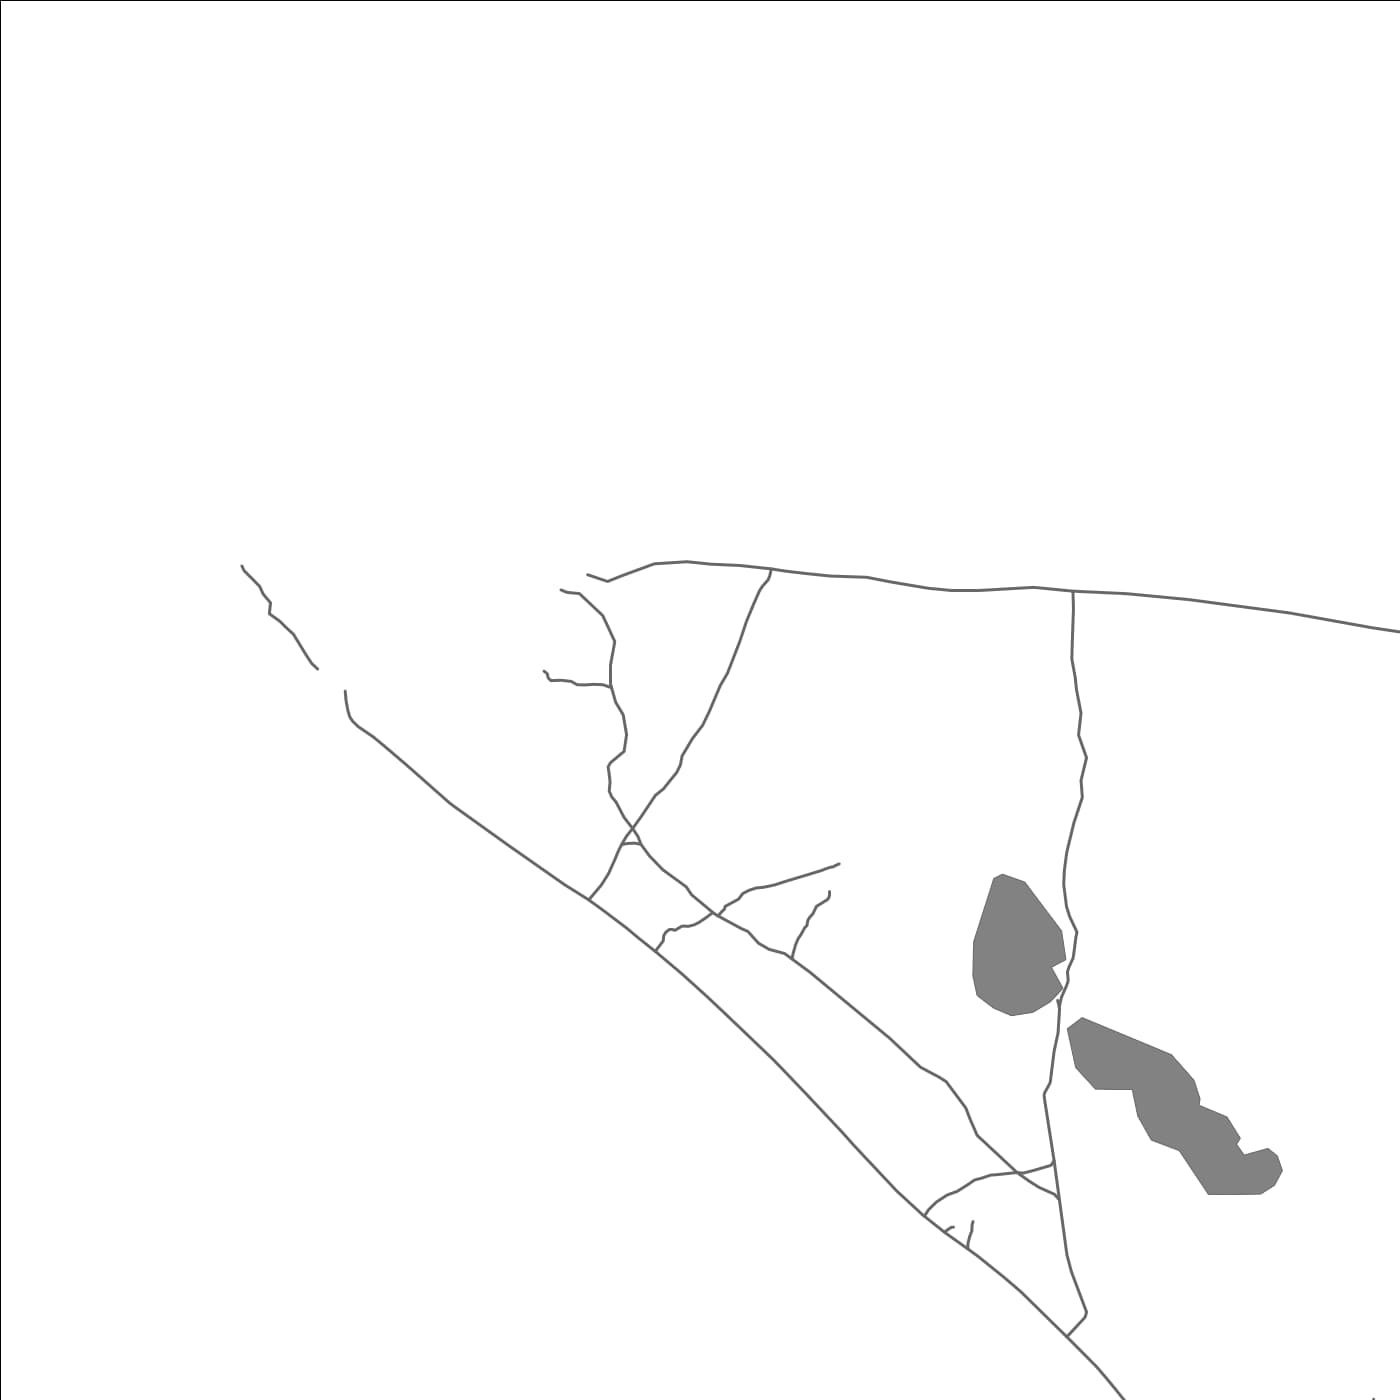 ROAD MAP OF MURIBENUA, KIRIBATI BY MAPBAKES